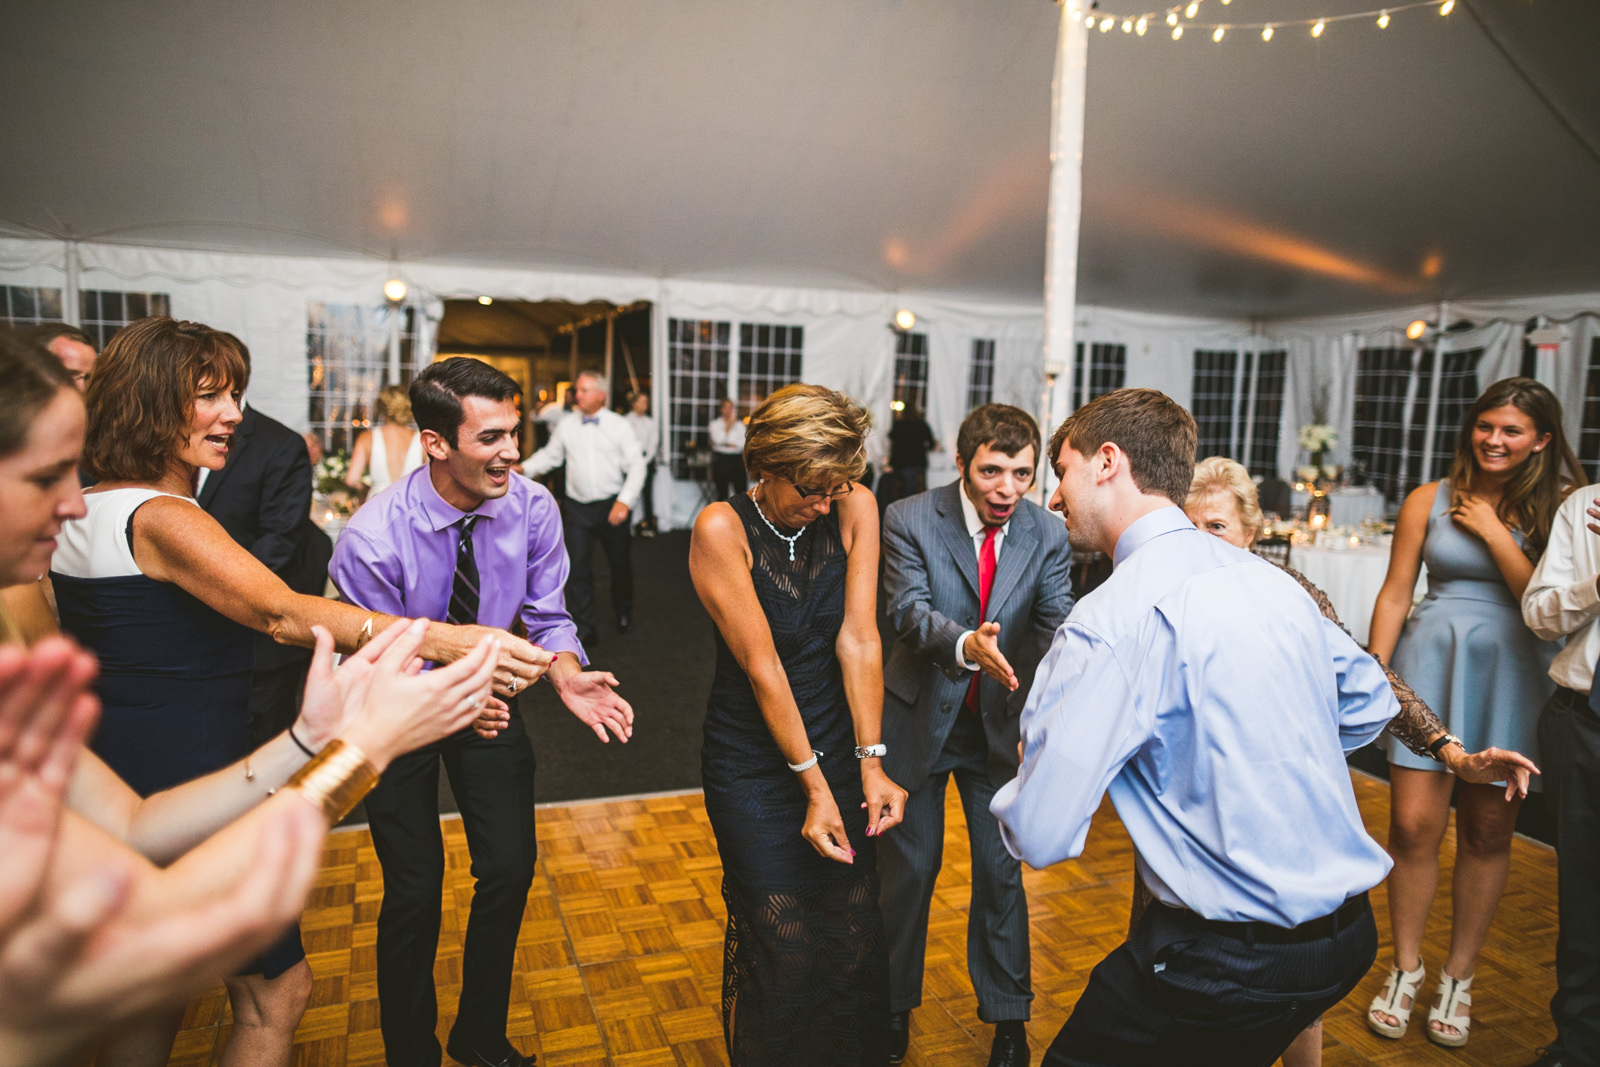 85-guests-dancing-at-wedding